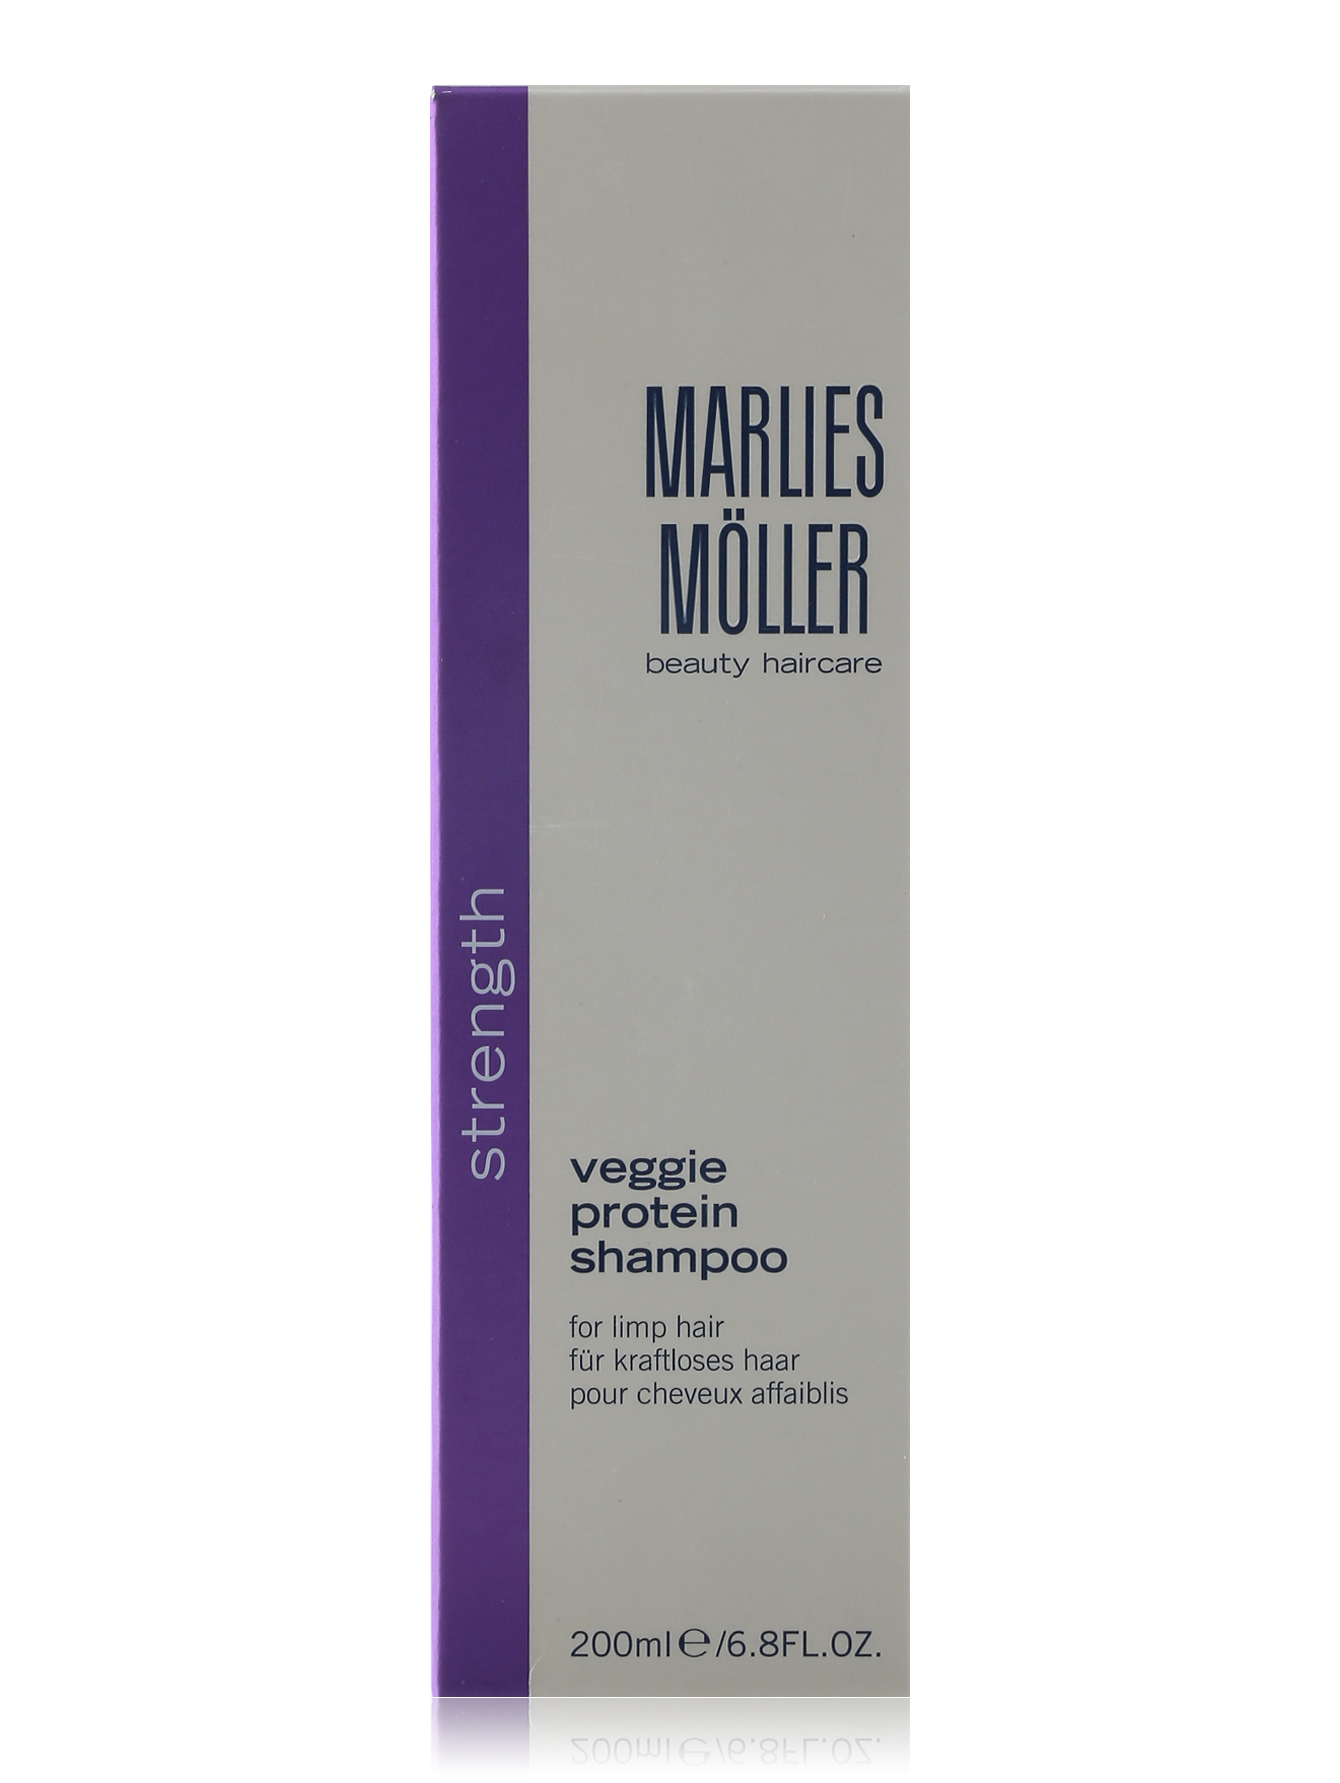  Шампунь для ослабленных волос - Veggie protein shampoo, 200ml - Обтравка1